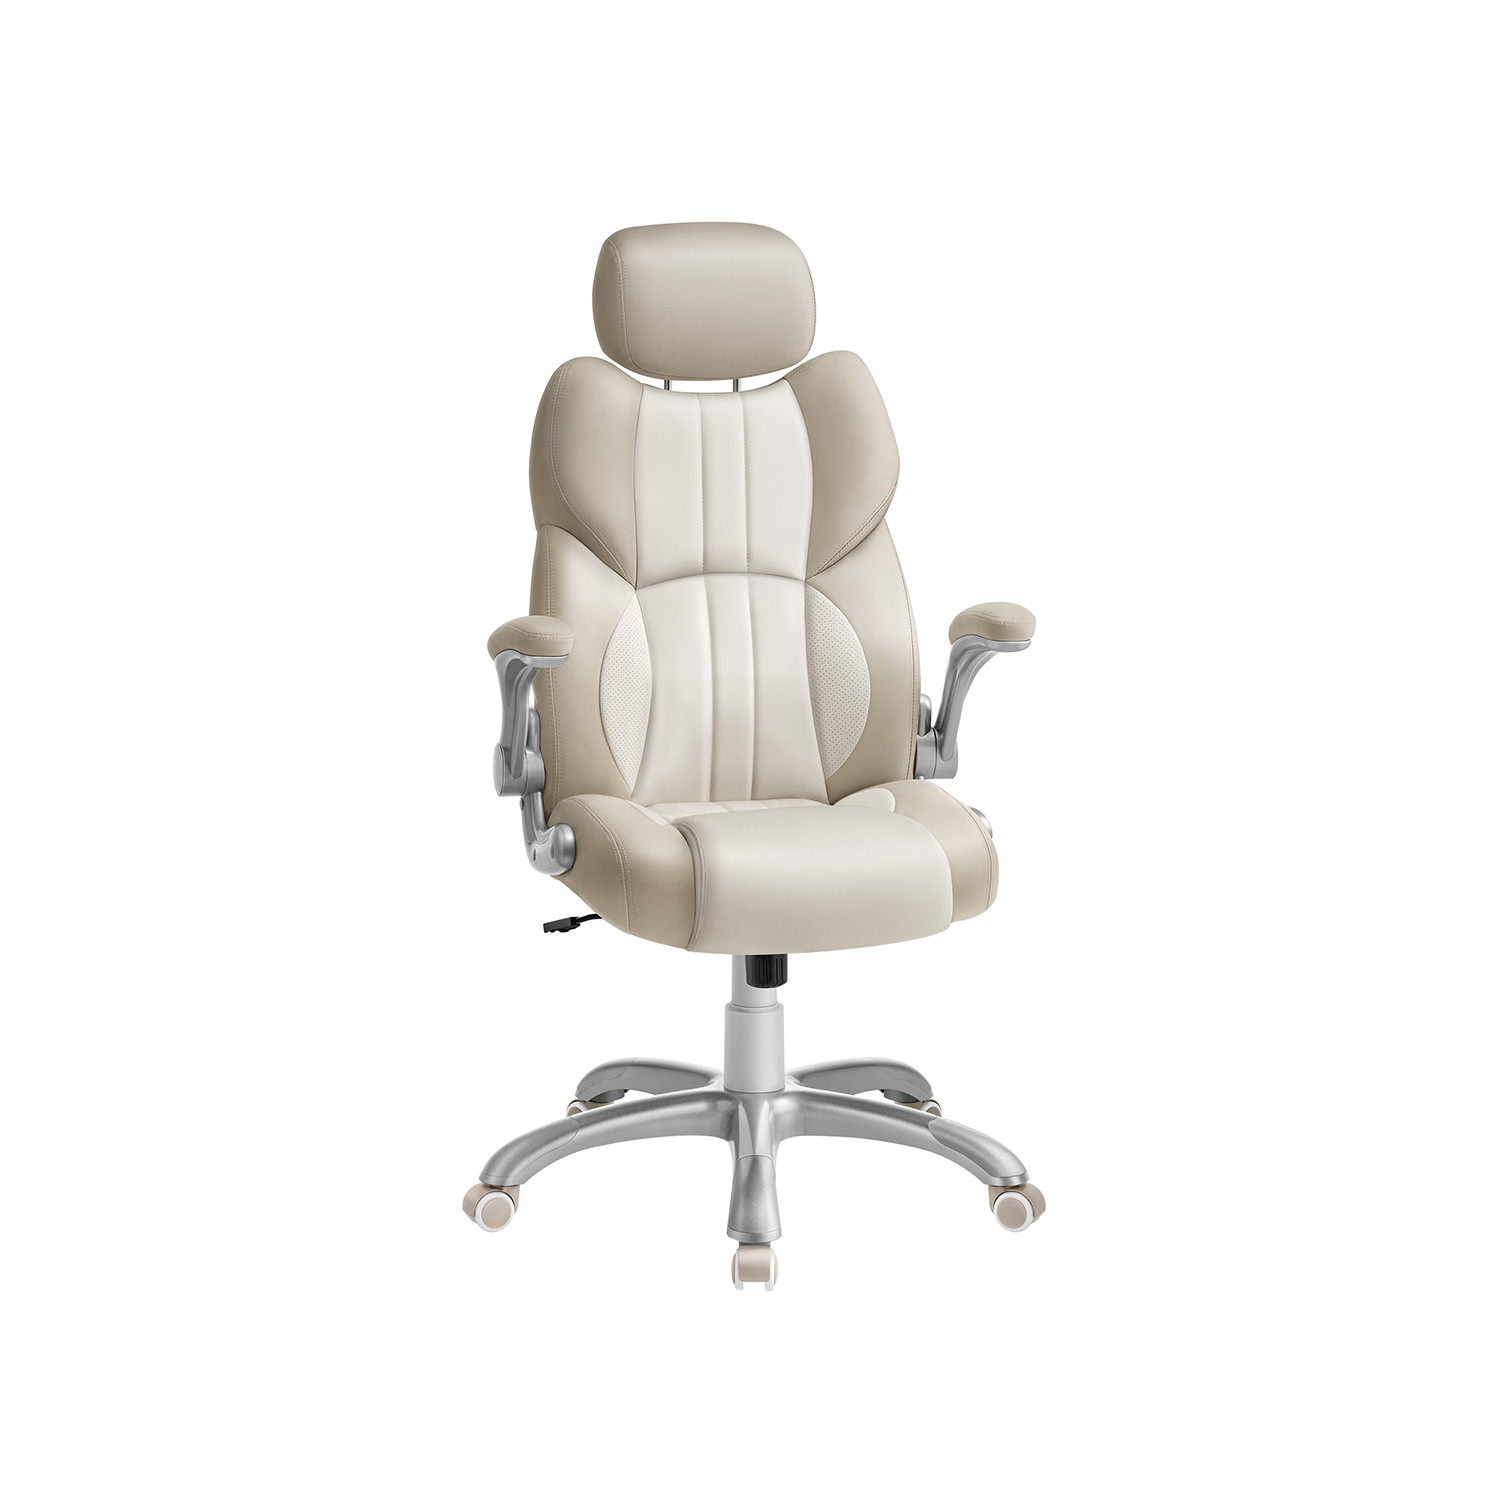 Kancelářská židle OBG065W02